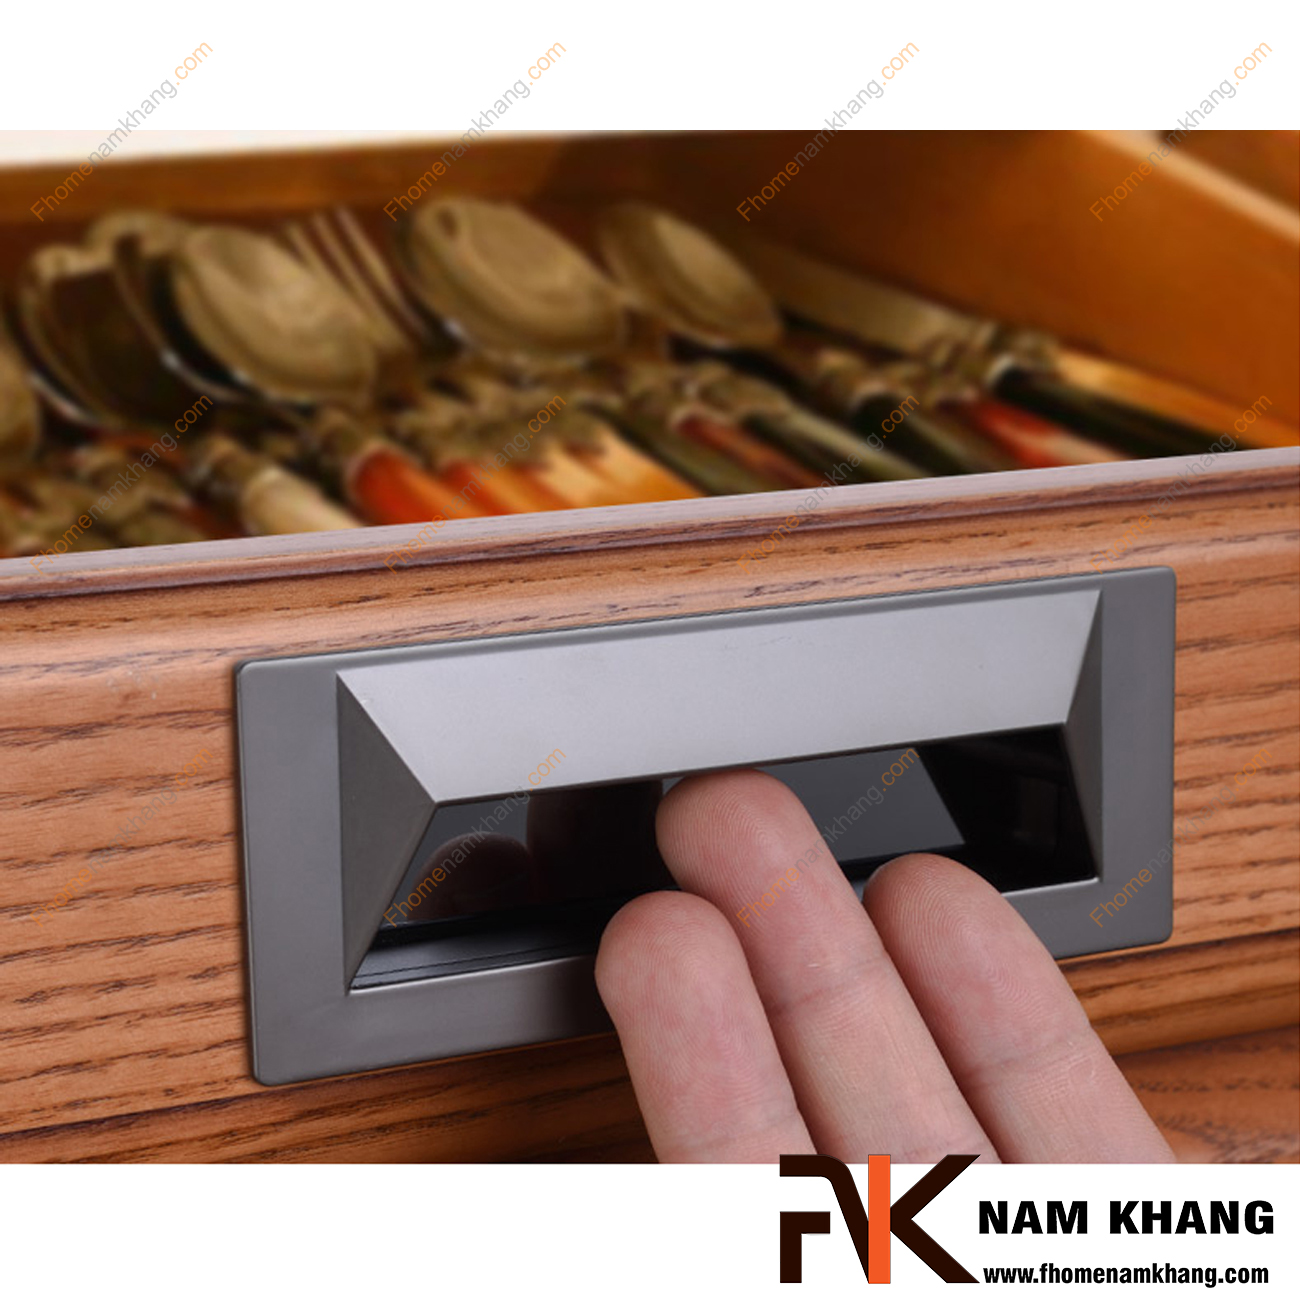 Tay nắm âm tủ dạng trơn màu xám NK223-X là loại tay nắm chuyên dùng cho các loại tủ đặt ở những nơi có không gian hạn chế hoặc dùng để nâng cao tính thẫm mỹ của sản phẩm.